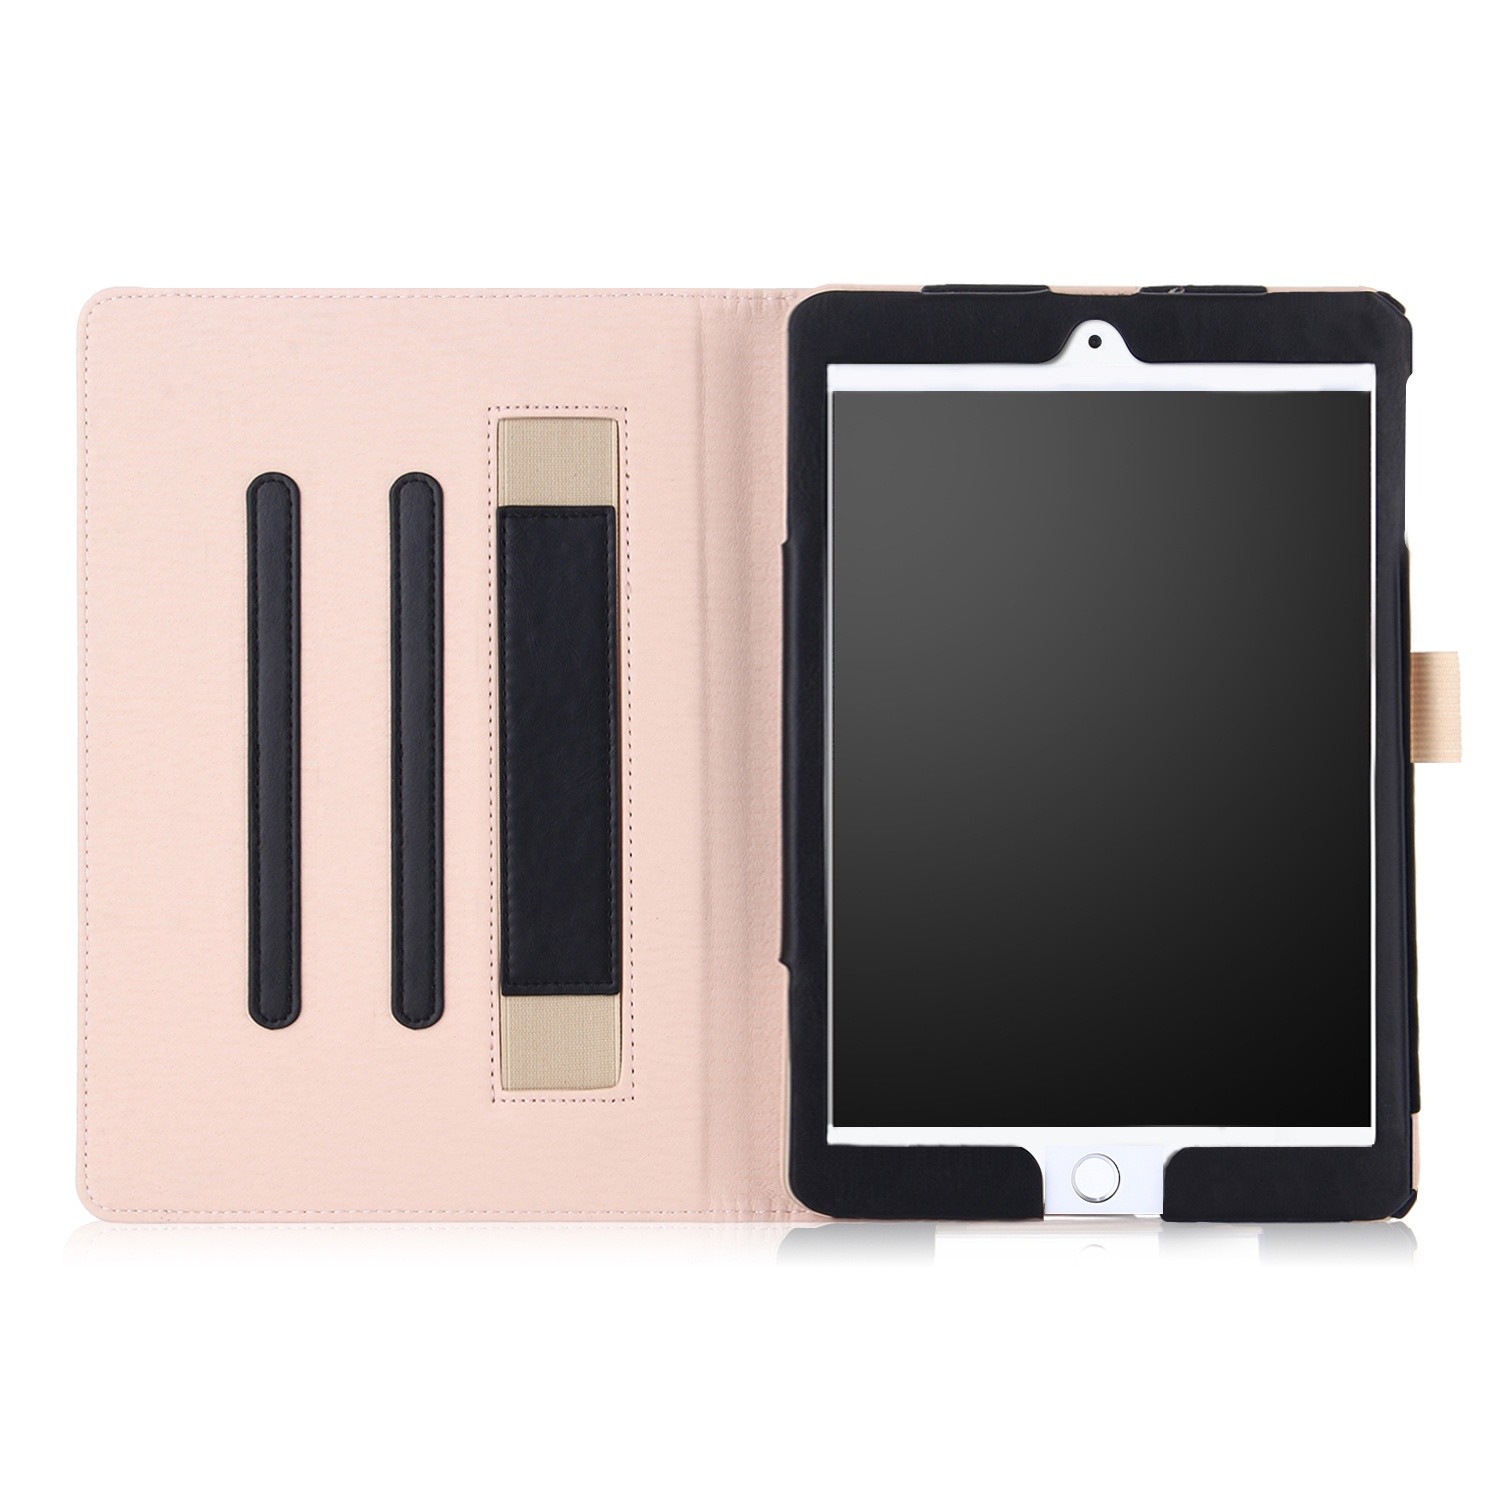 pauze Recensent Isolator iPad mini 4 / iPad mini 5 leren case / hoes zwart incl. standaard met 3  standen